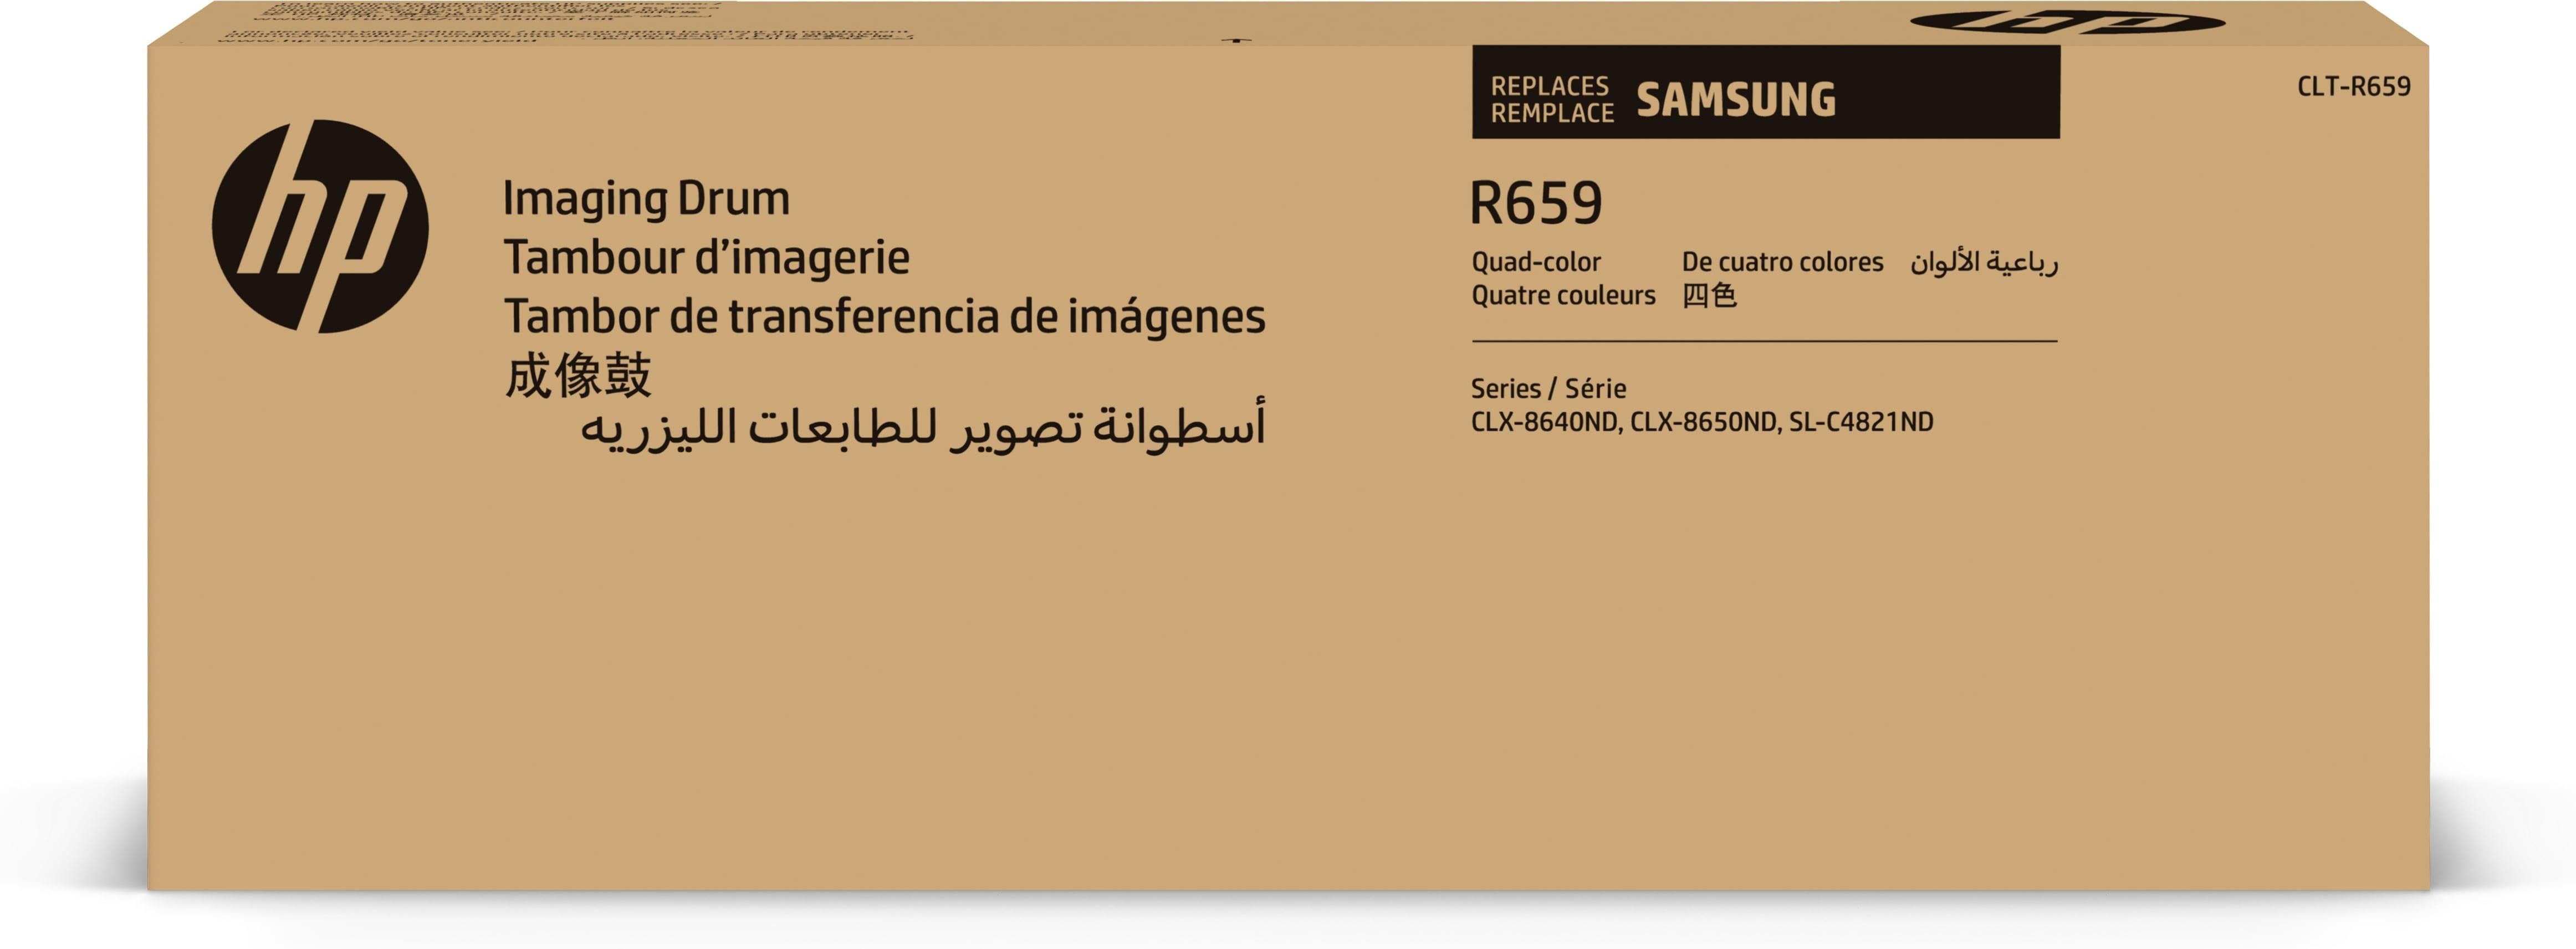 HP Samsung CLT-R659 Nero